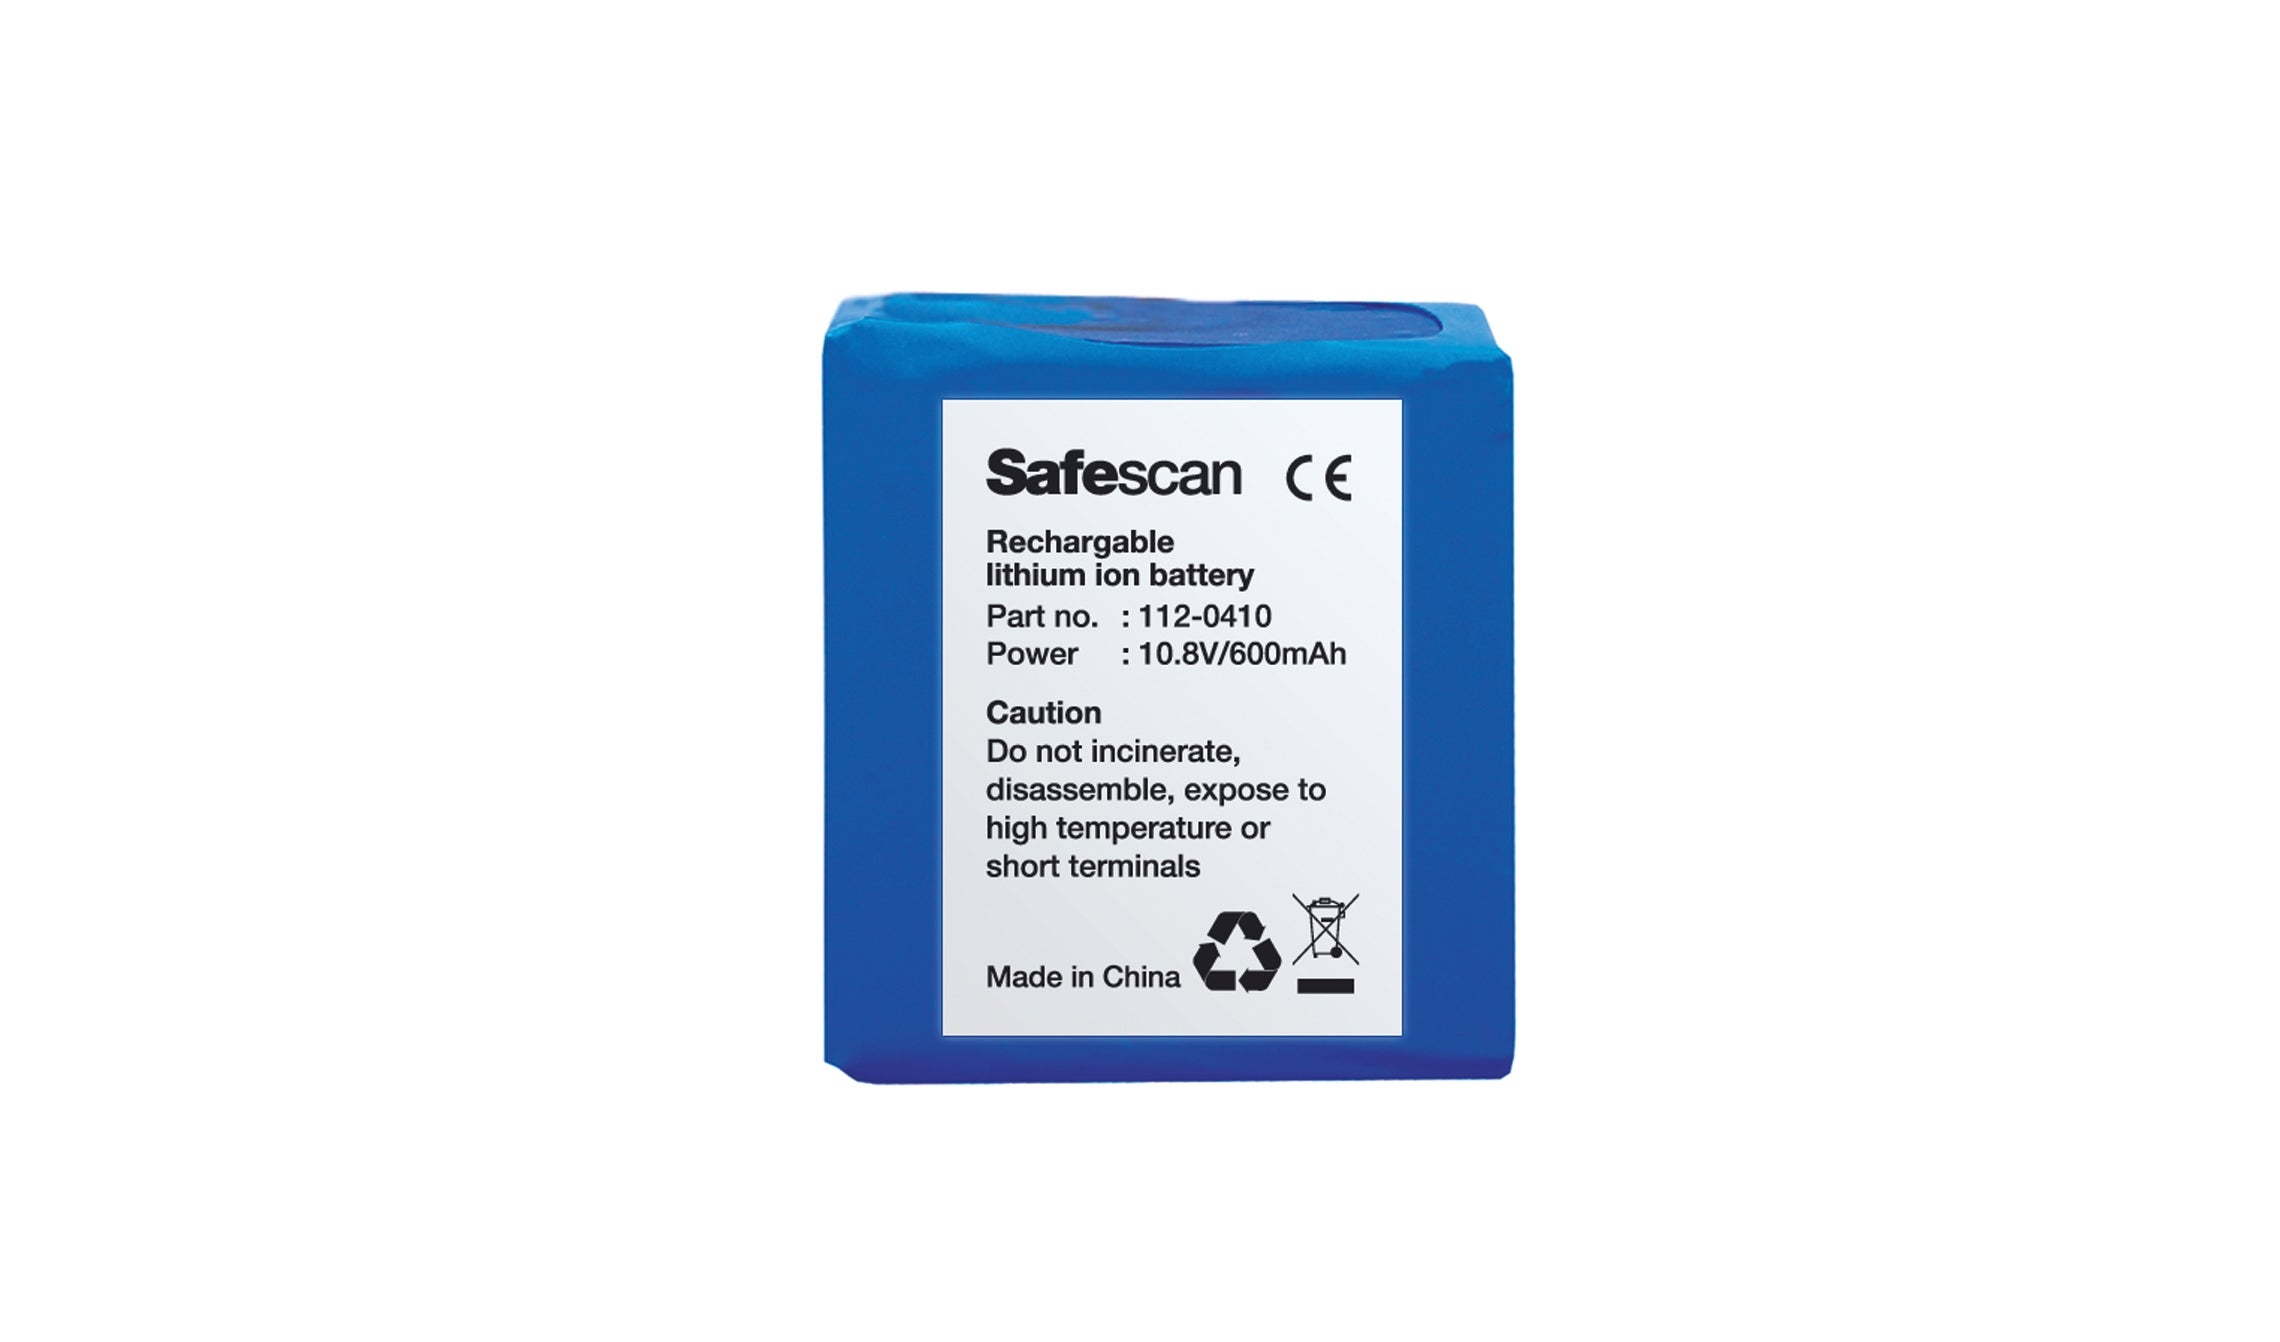 safescan-lb-105-bateria-recargable